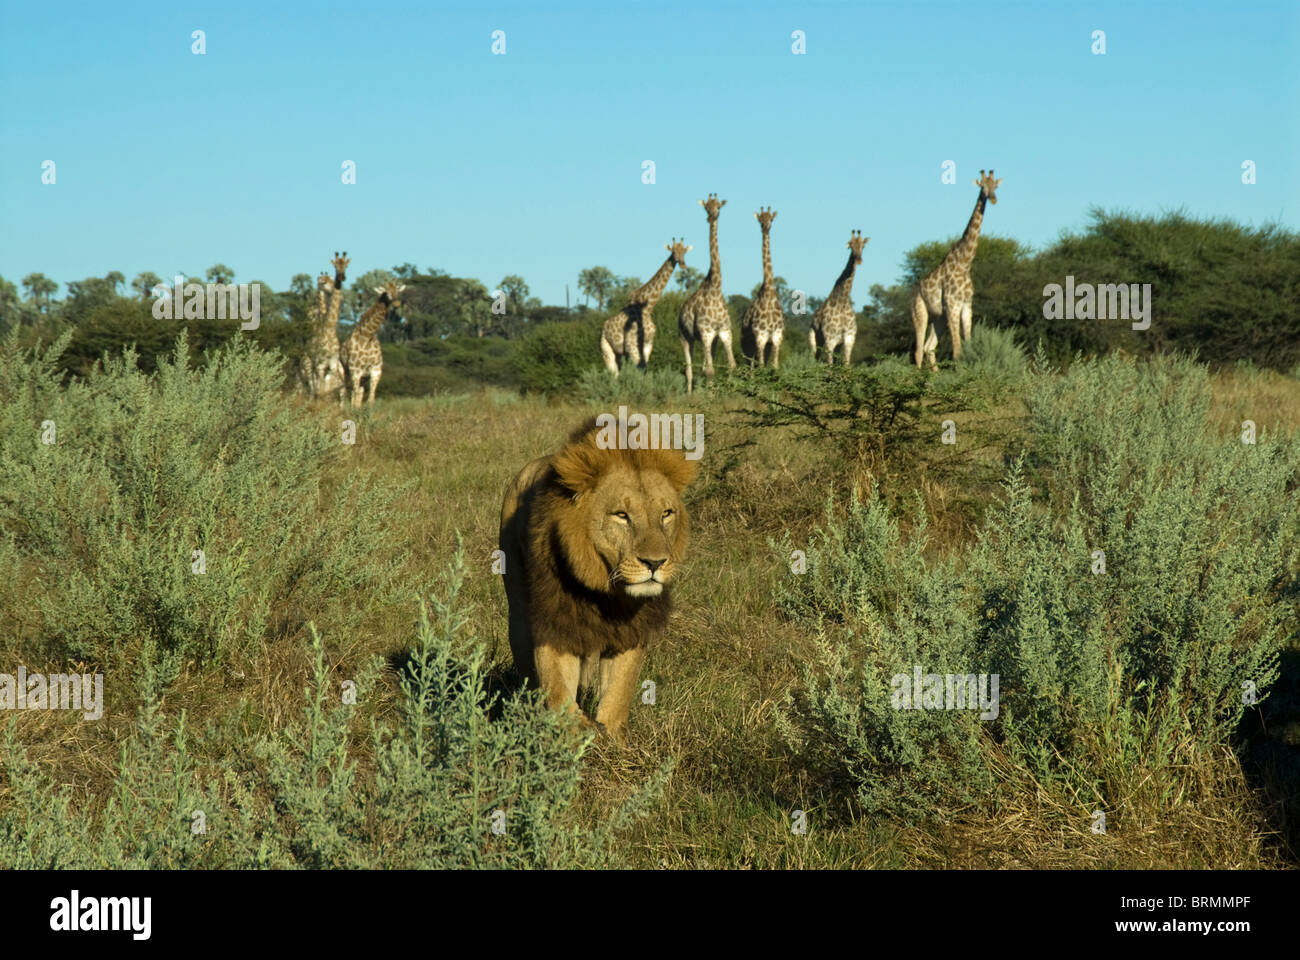 León macho caminando con una manada de jirafas en el fondo Foto de stock